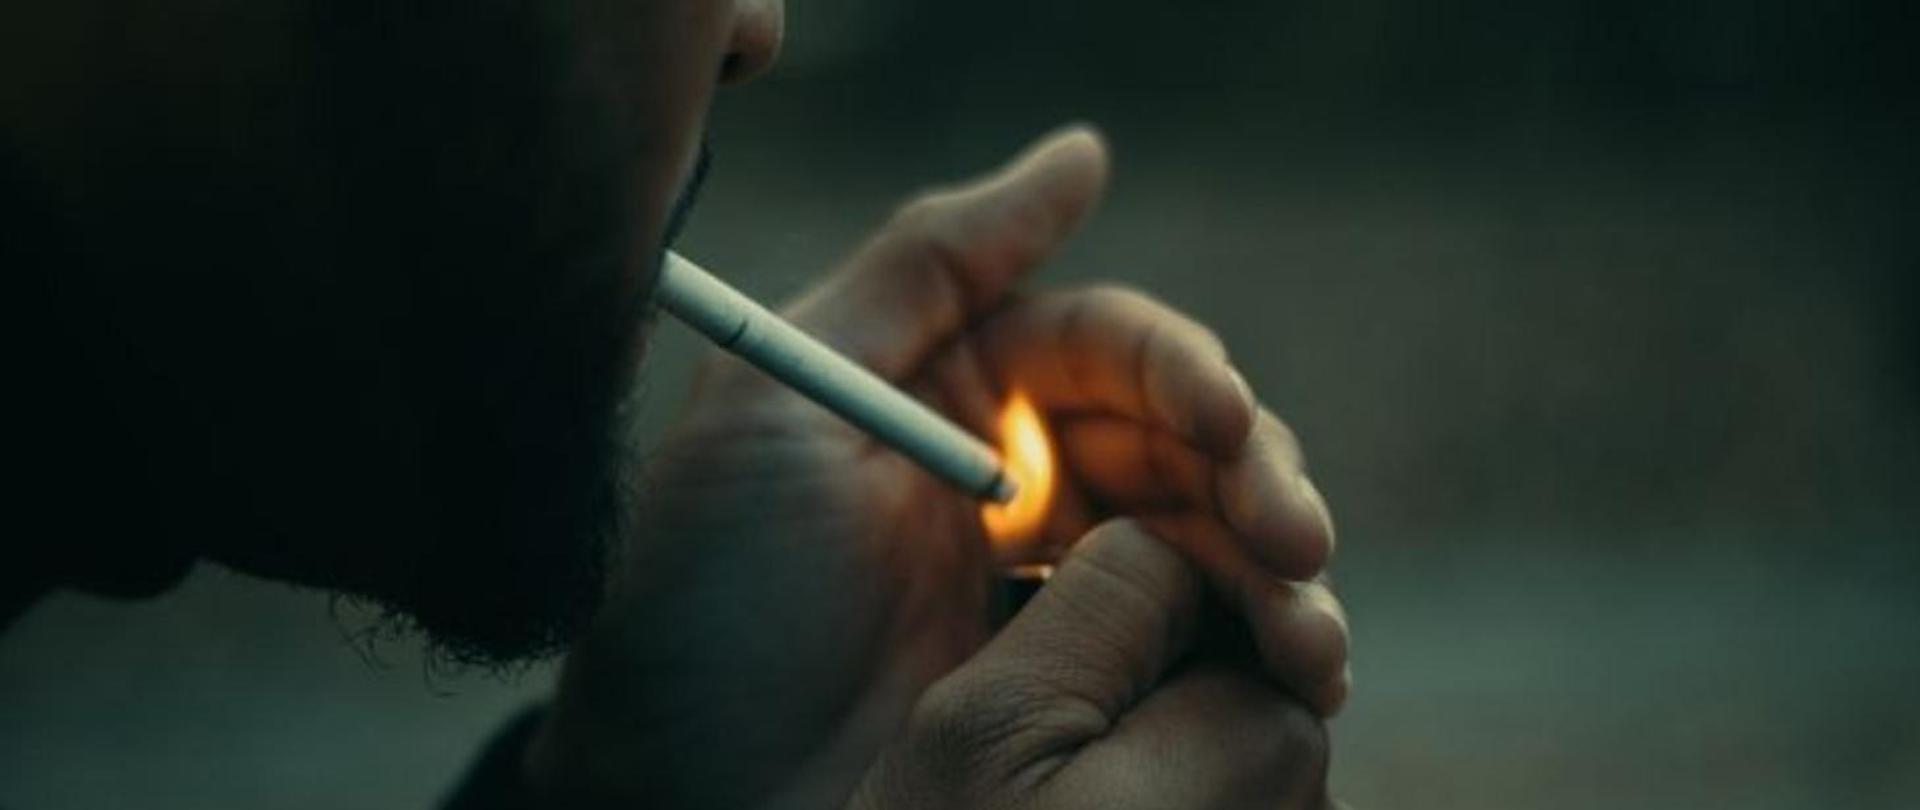 Twarz mężczyzny z papierosem, który zapala papierosa zapalniczką.